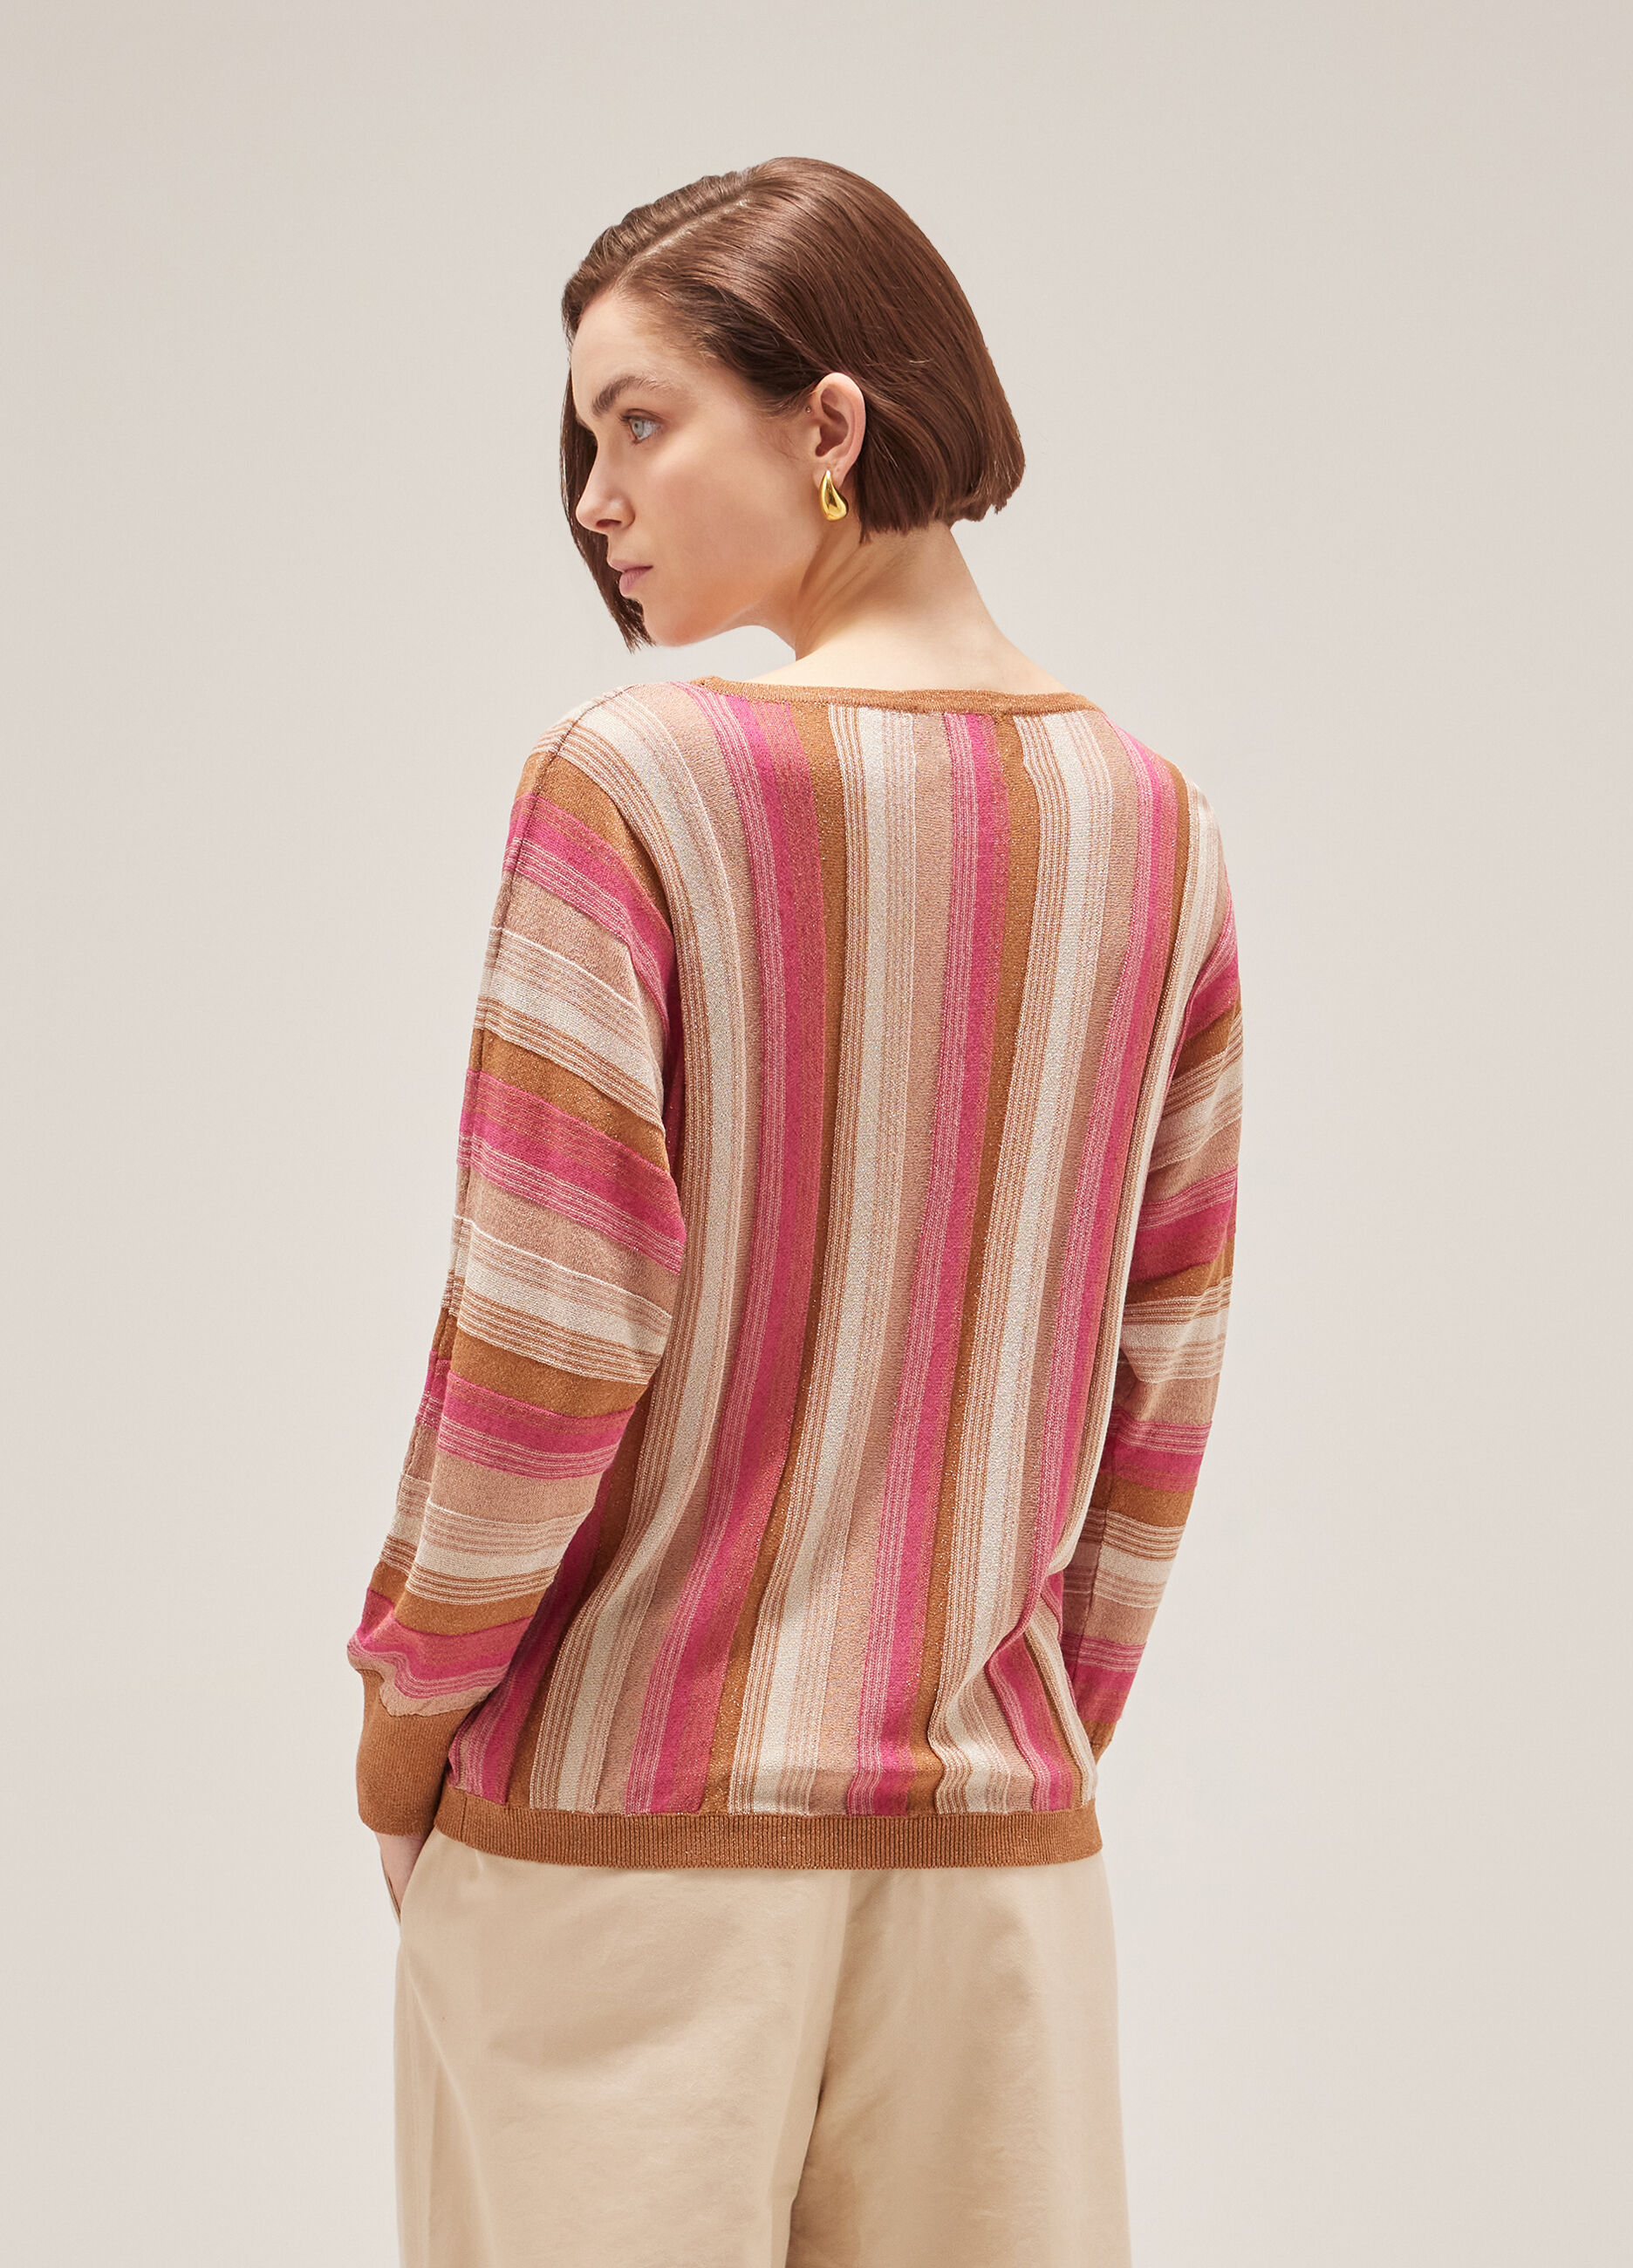 Maglione tricot a righe_2